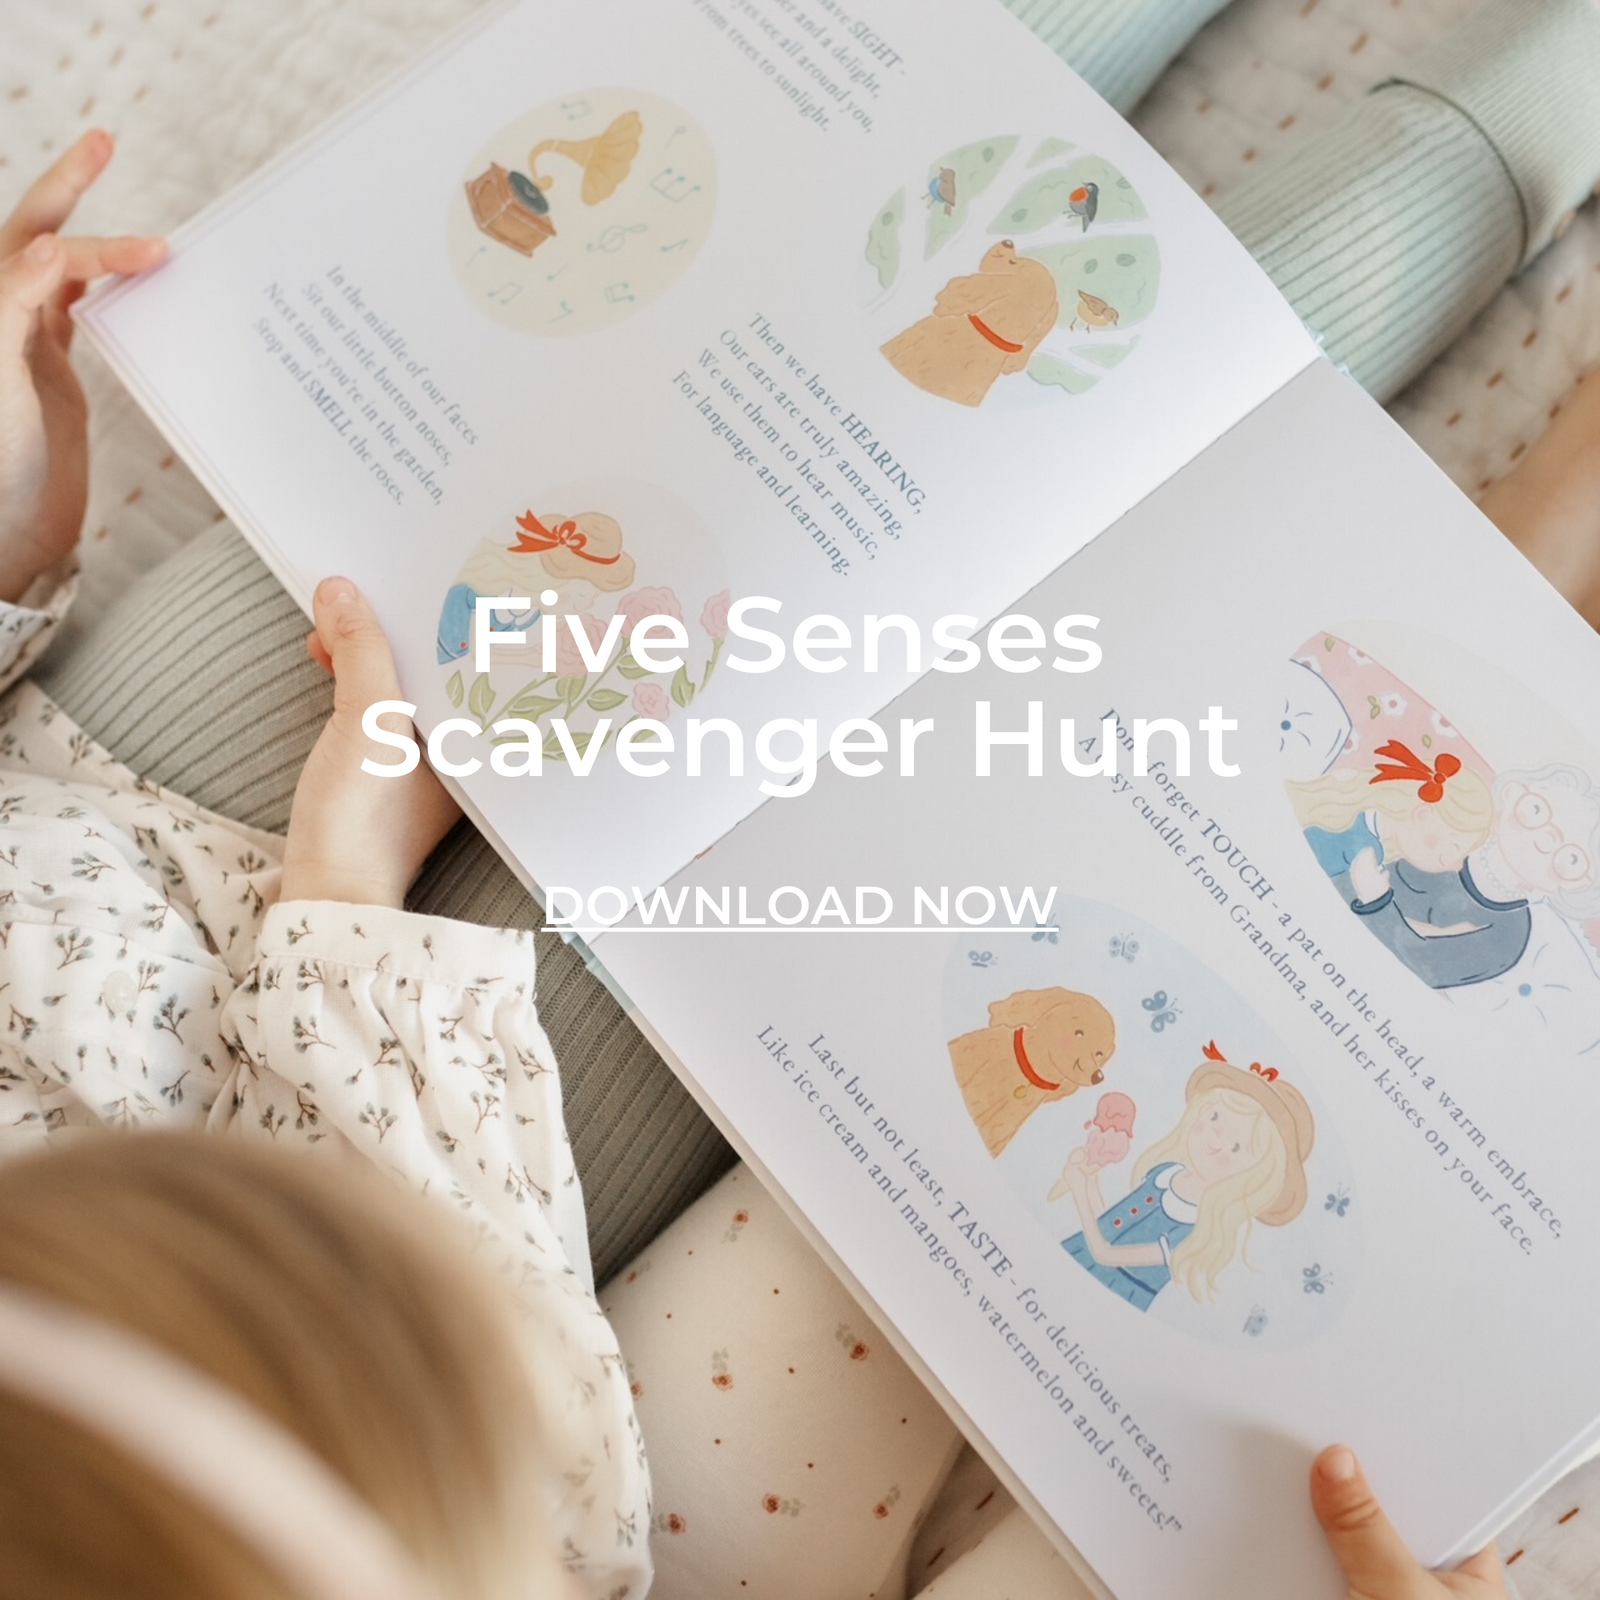 Five Senses Scavenger Hunt